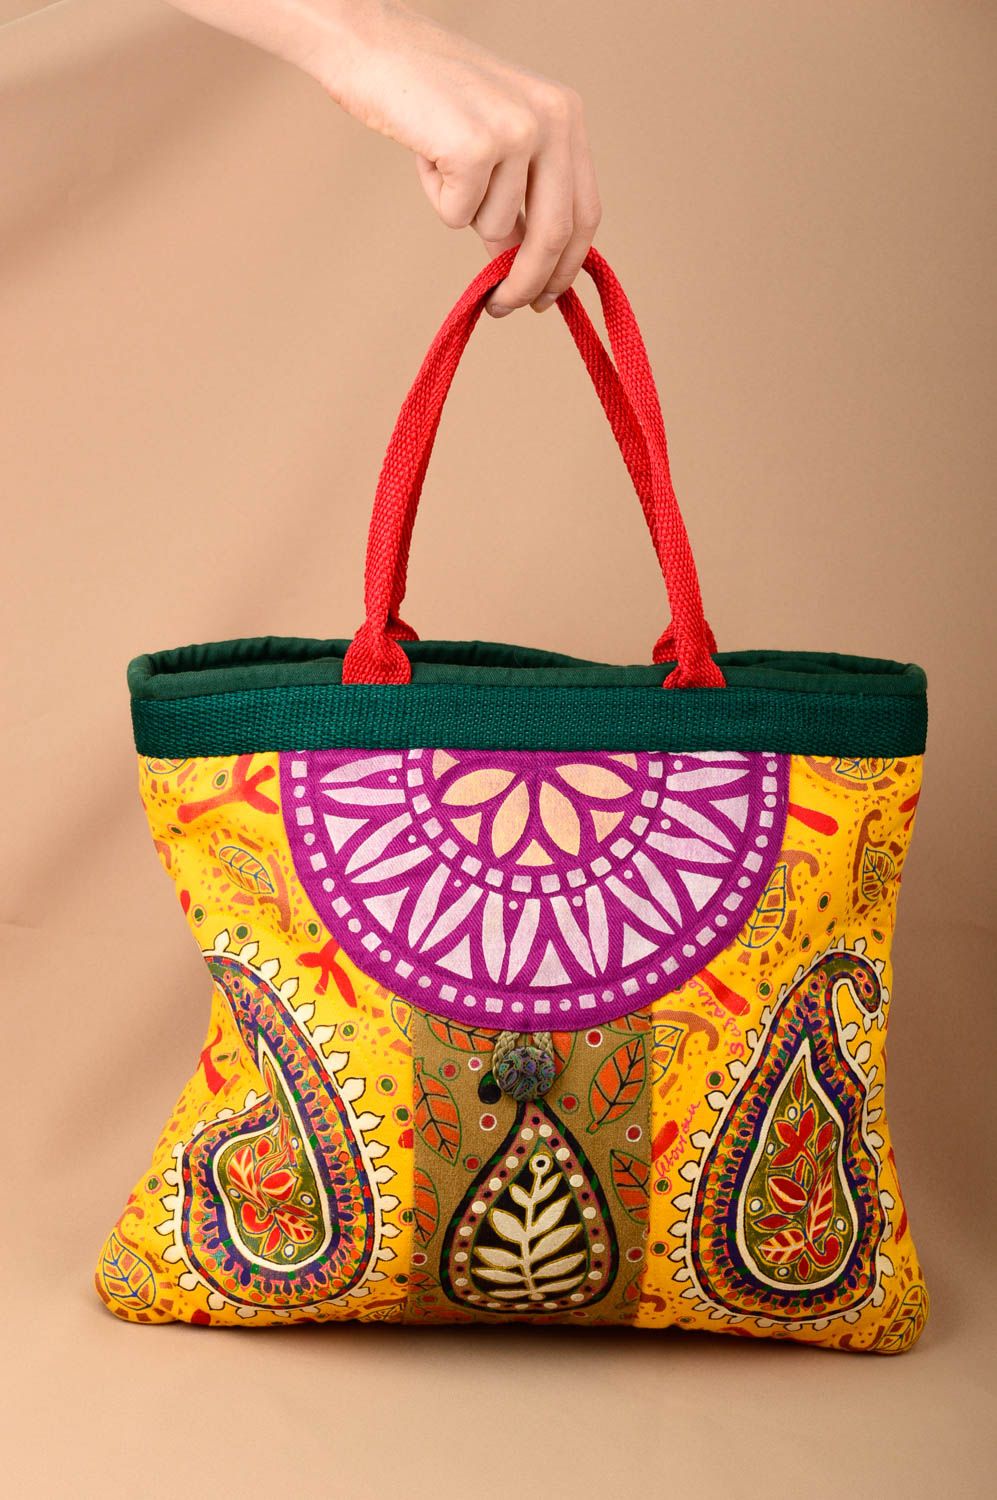 Сумка ручной работы текстильная сумка яркая красивая сумка через плечо с узором фото 1